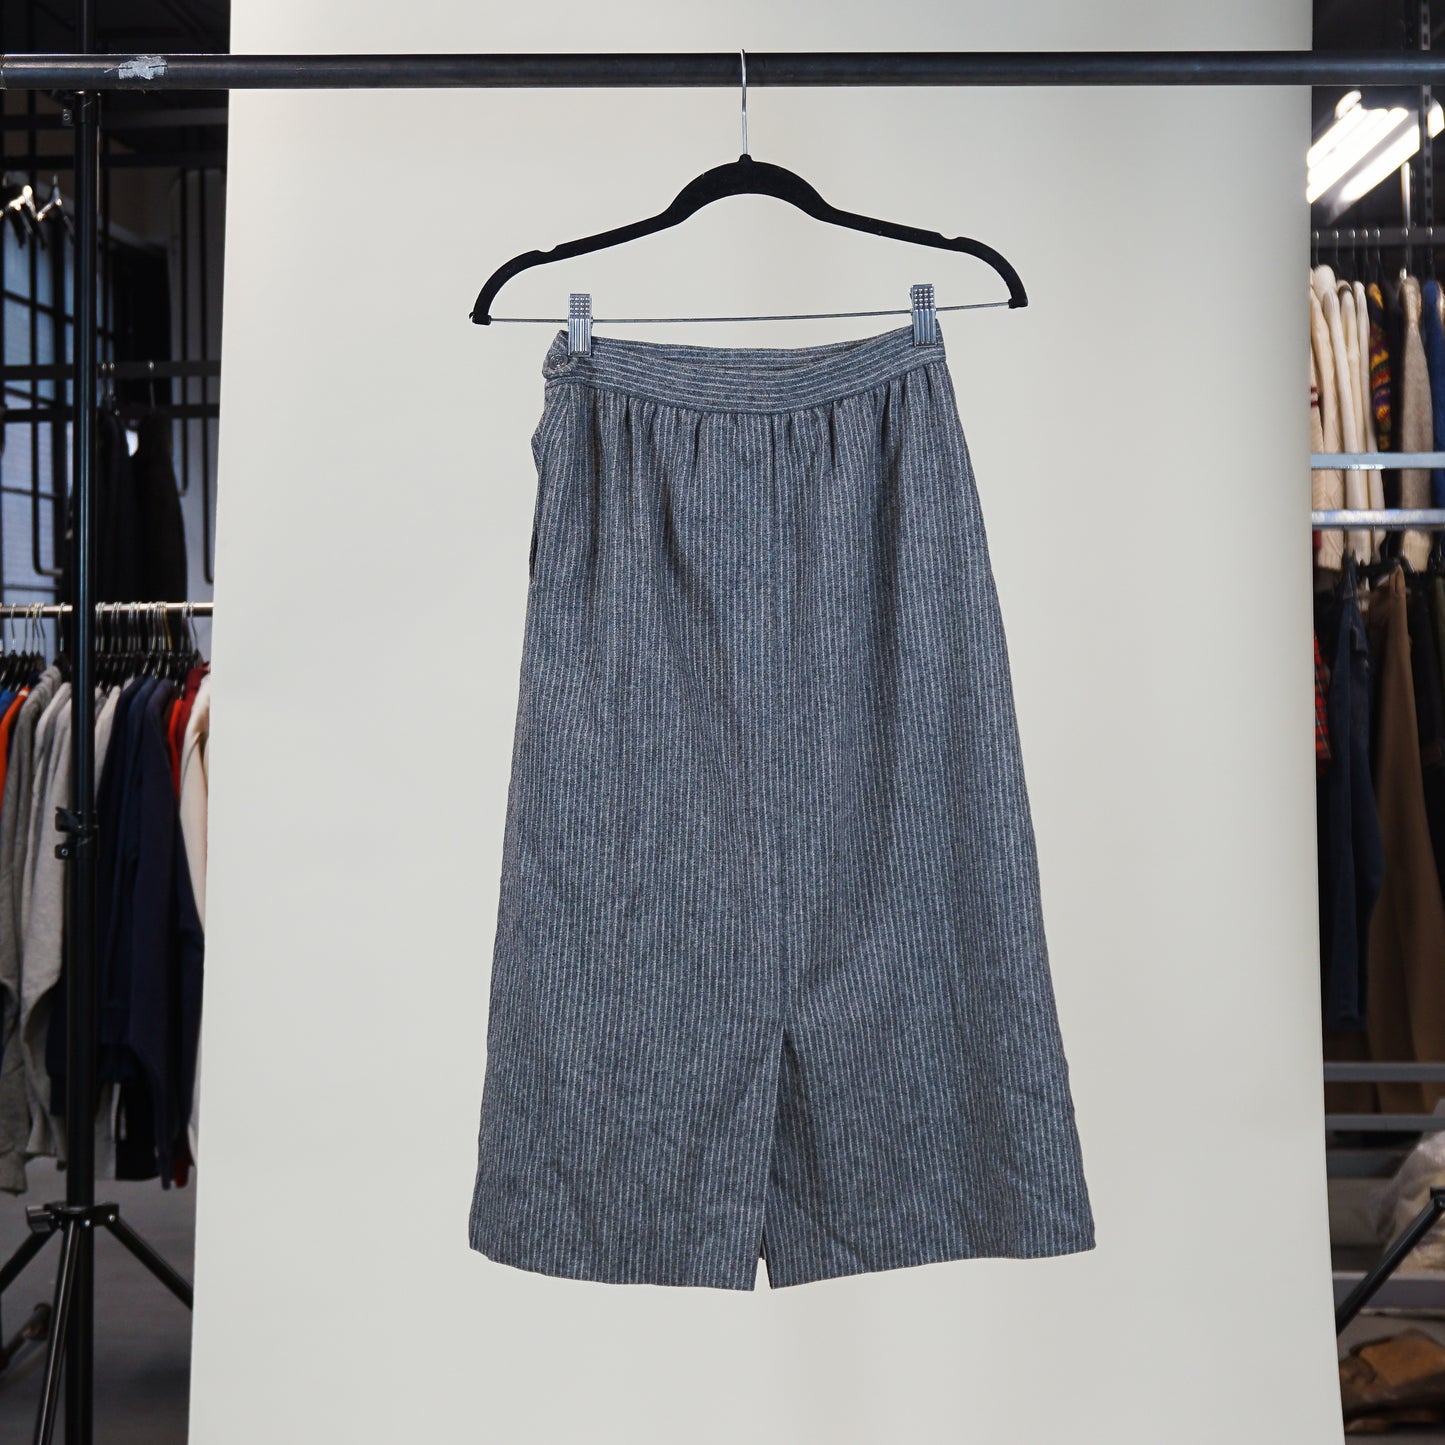 1990s 'JH Collectibles' Wool Blend Pinstripe Midi Skirt (24" Waist)